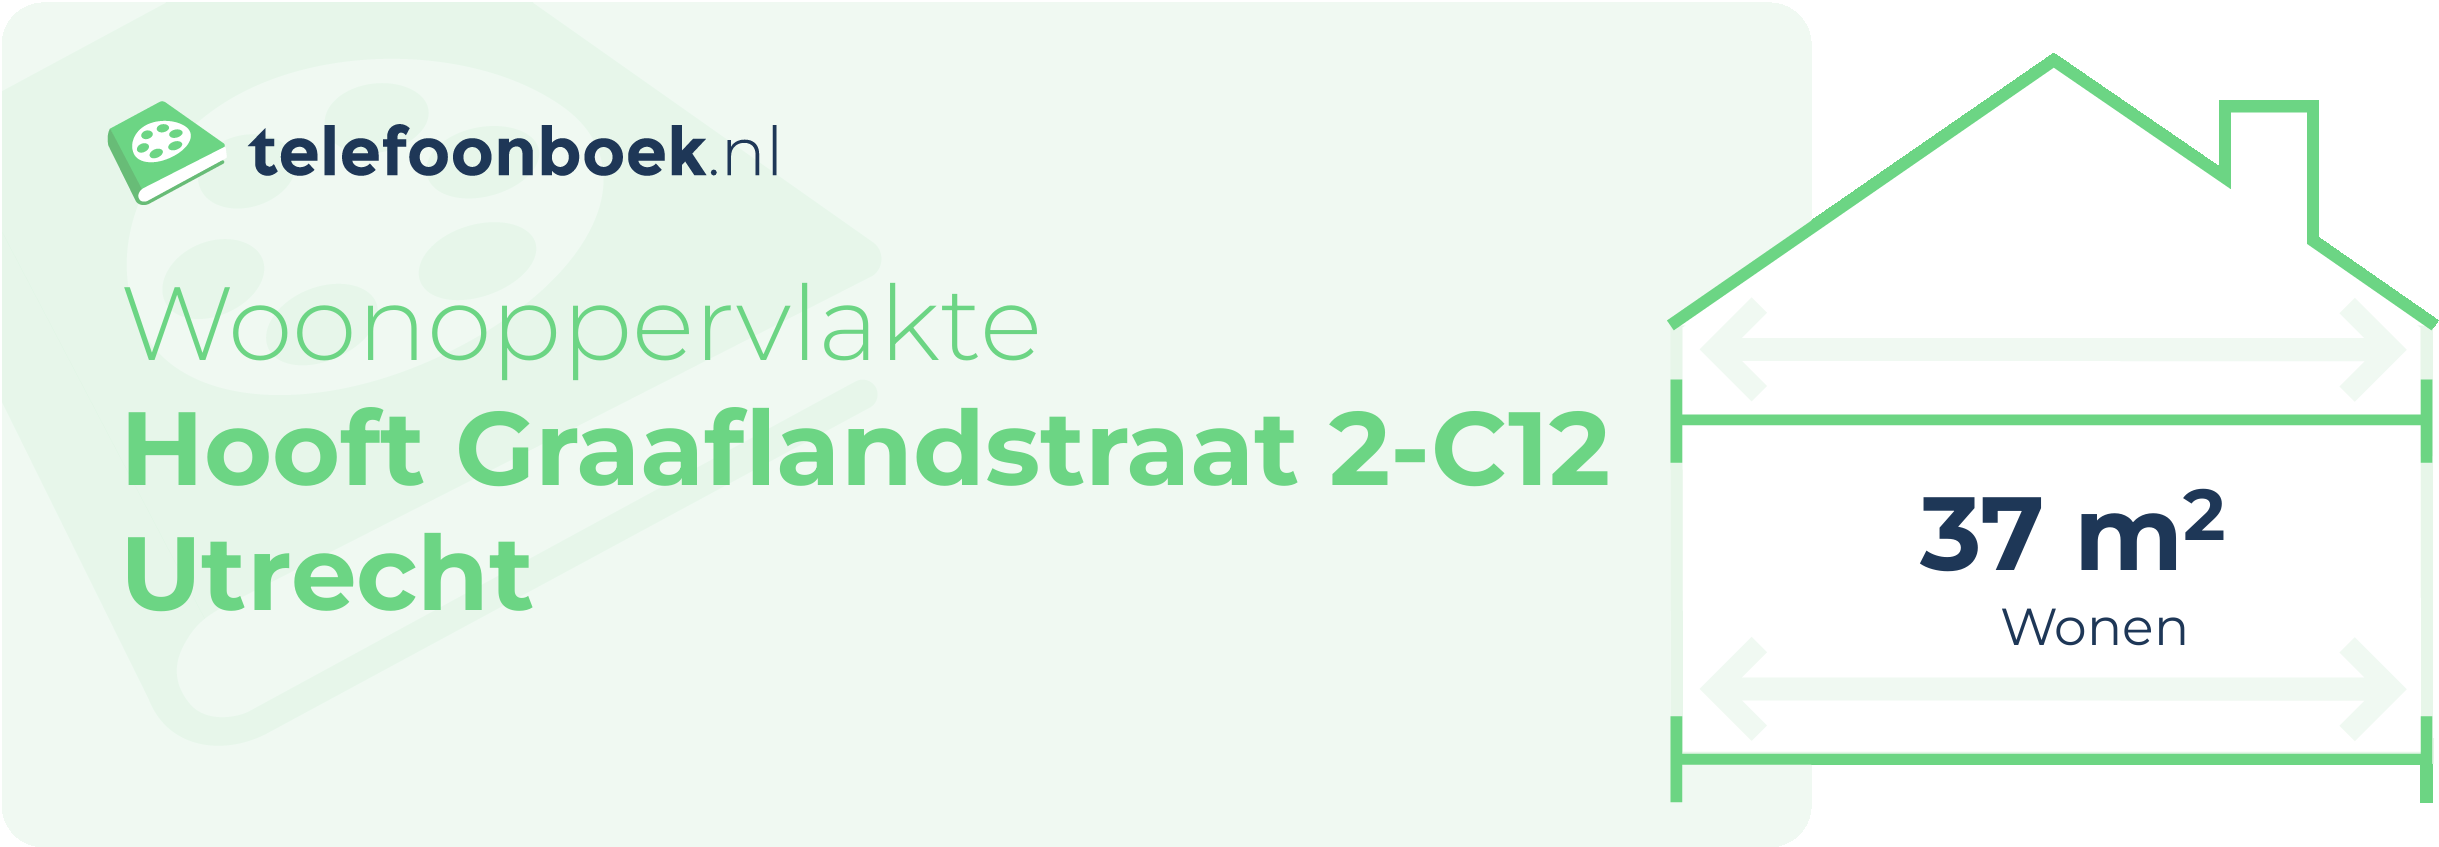 Woonoppervlakte Hooft Graaflandstraat 2-C12 Utrecht